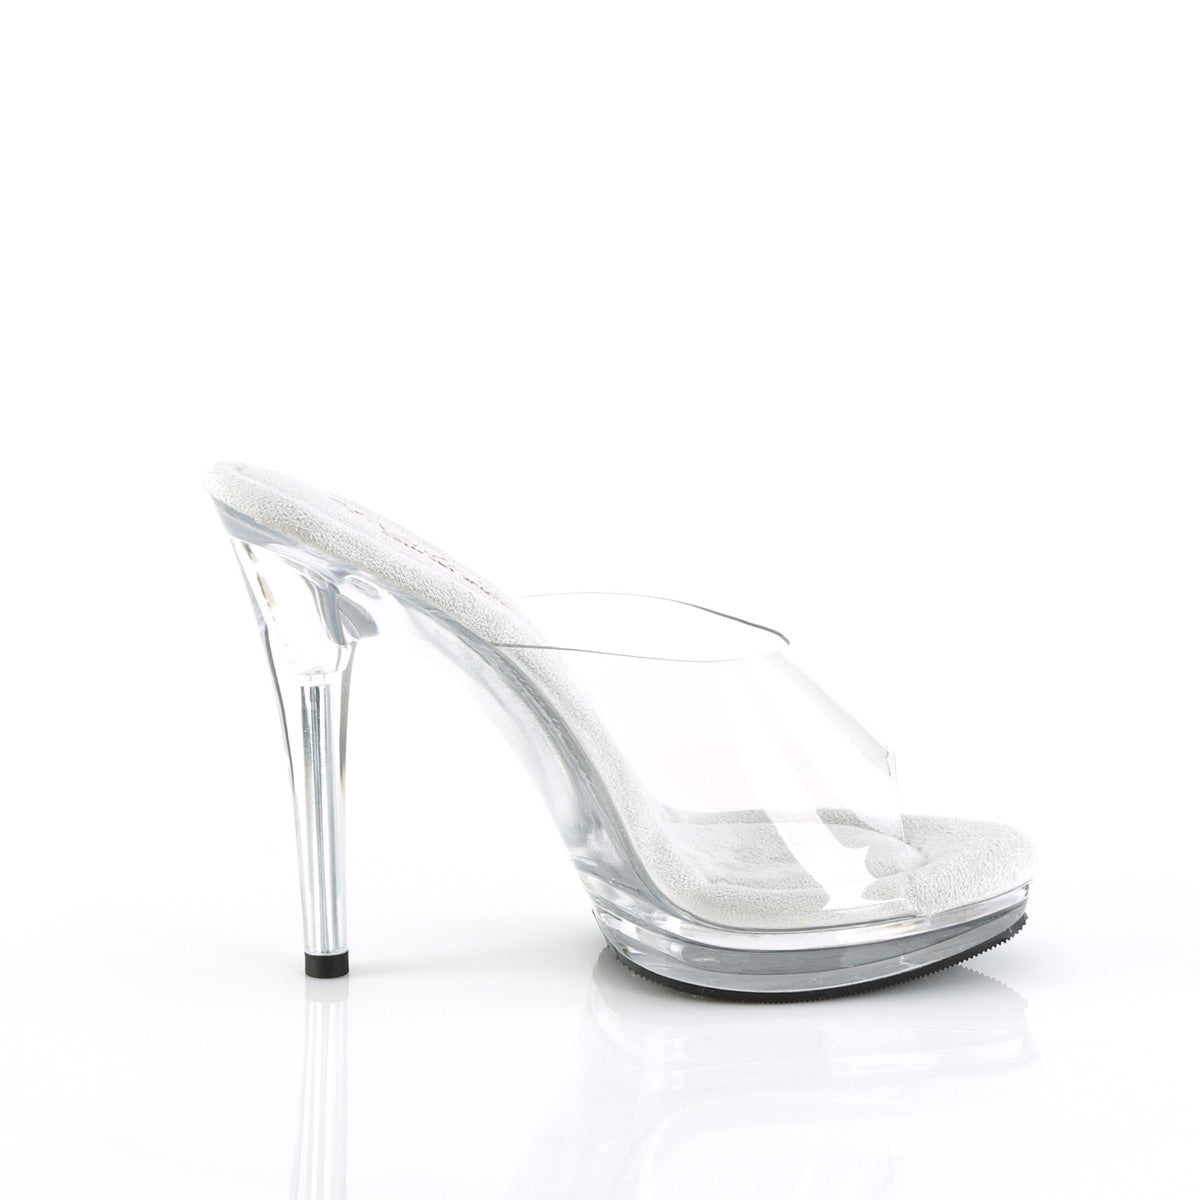 GLORY-501 Black & Clear Slide High Heel